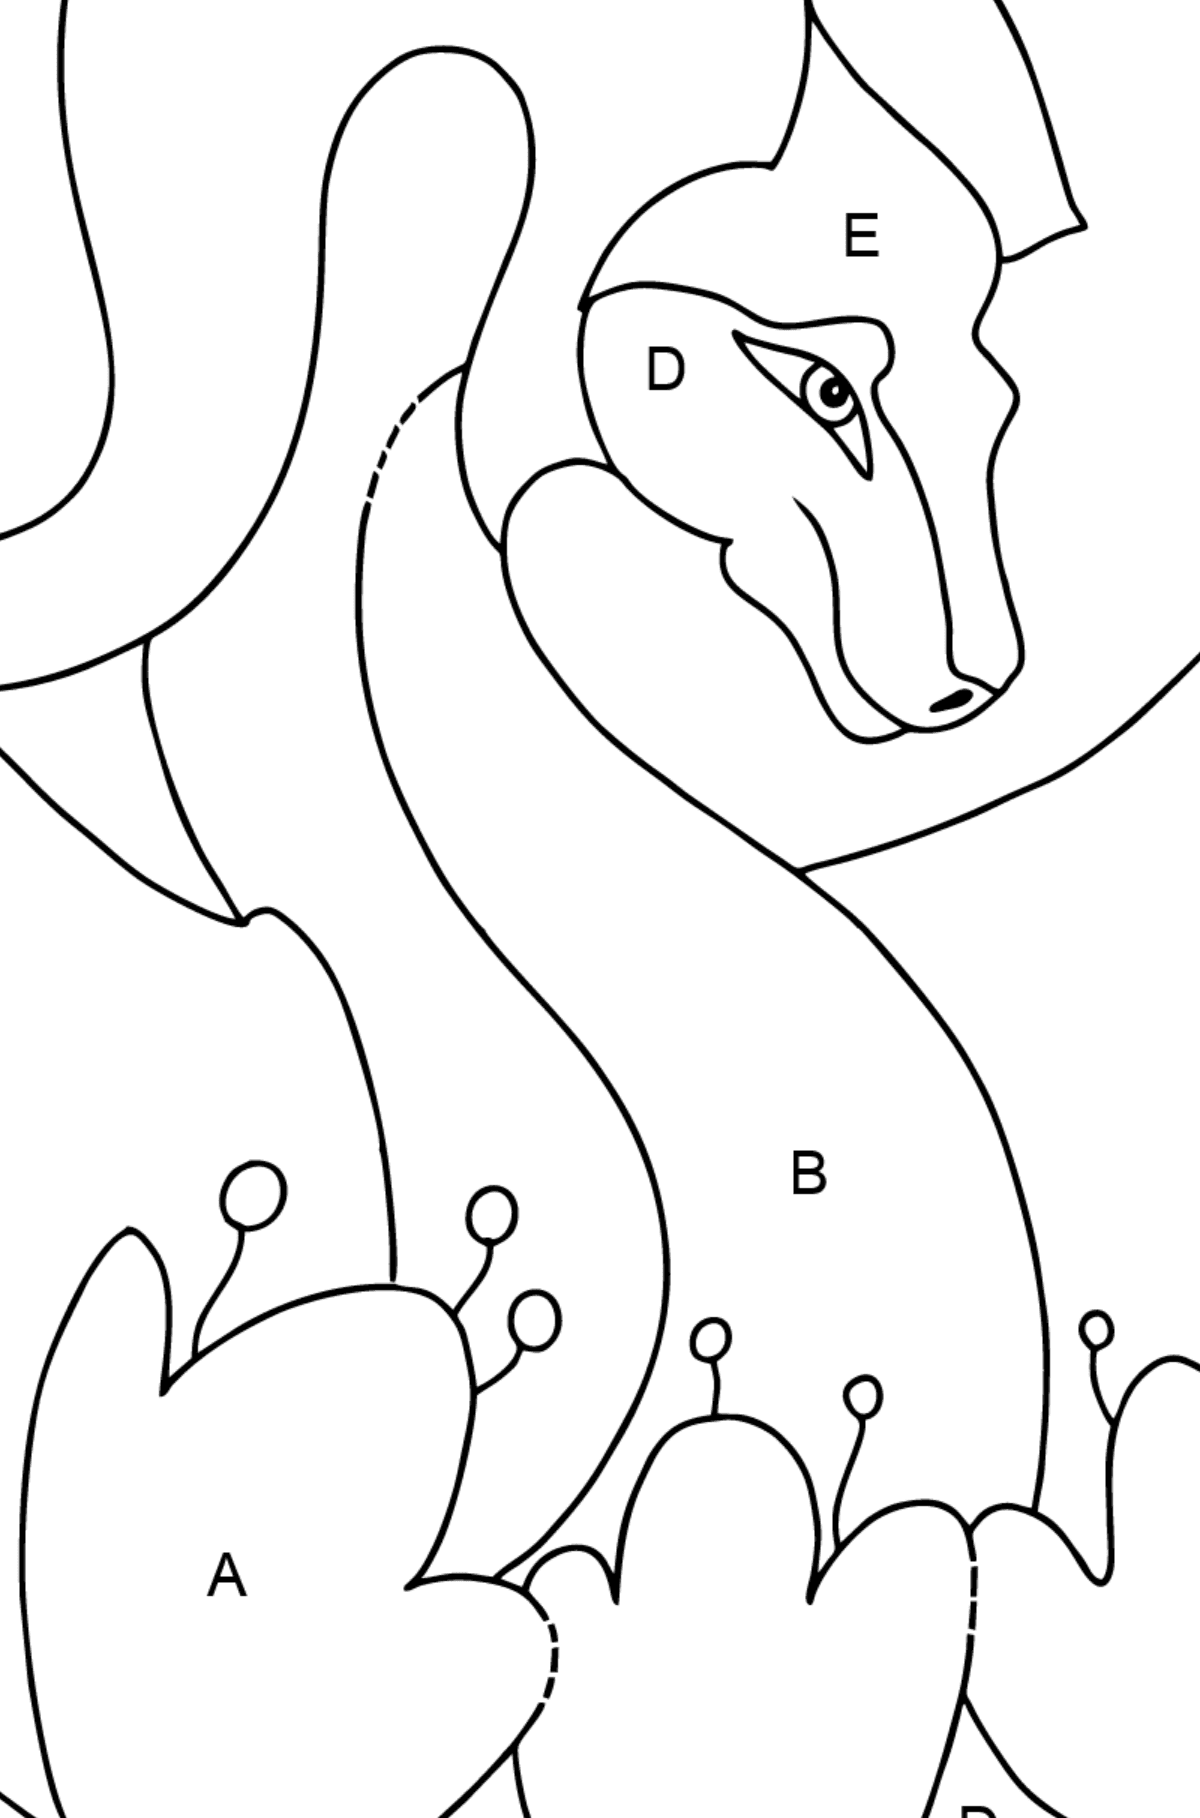 Desenho para colorir dragão colorido (simples) - Colorir por Letras para Crianças